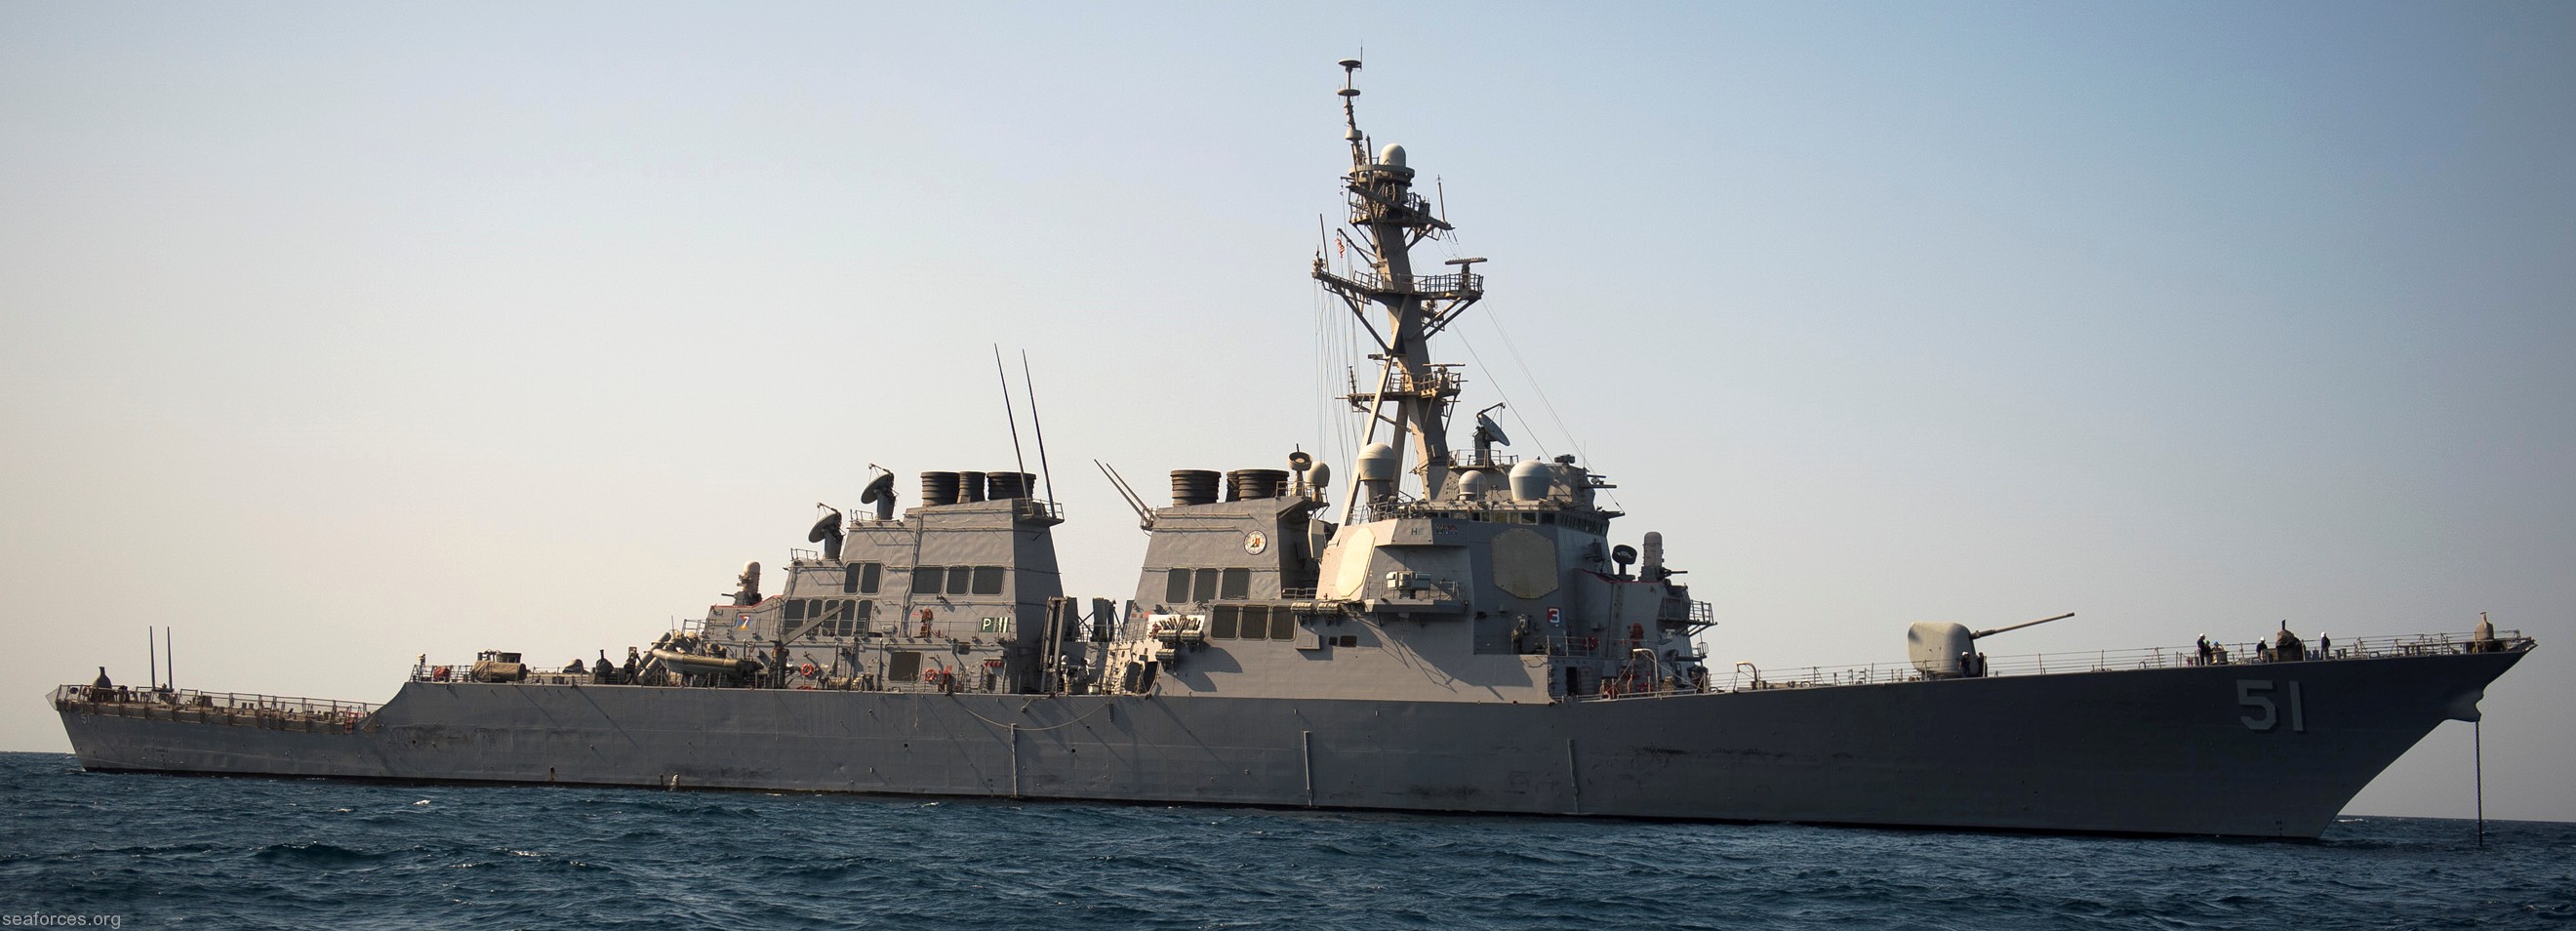 ddg-51 uss arleigh burke destroyer us navy 23 arabian gulf